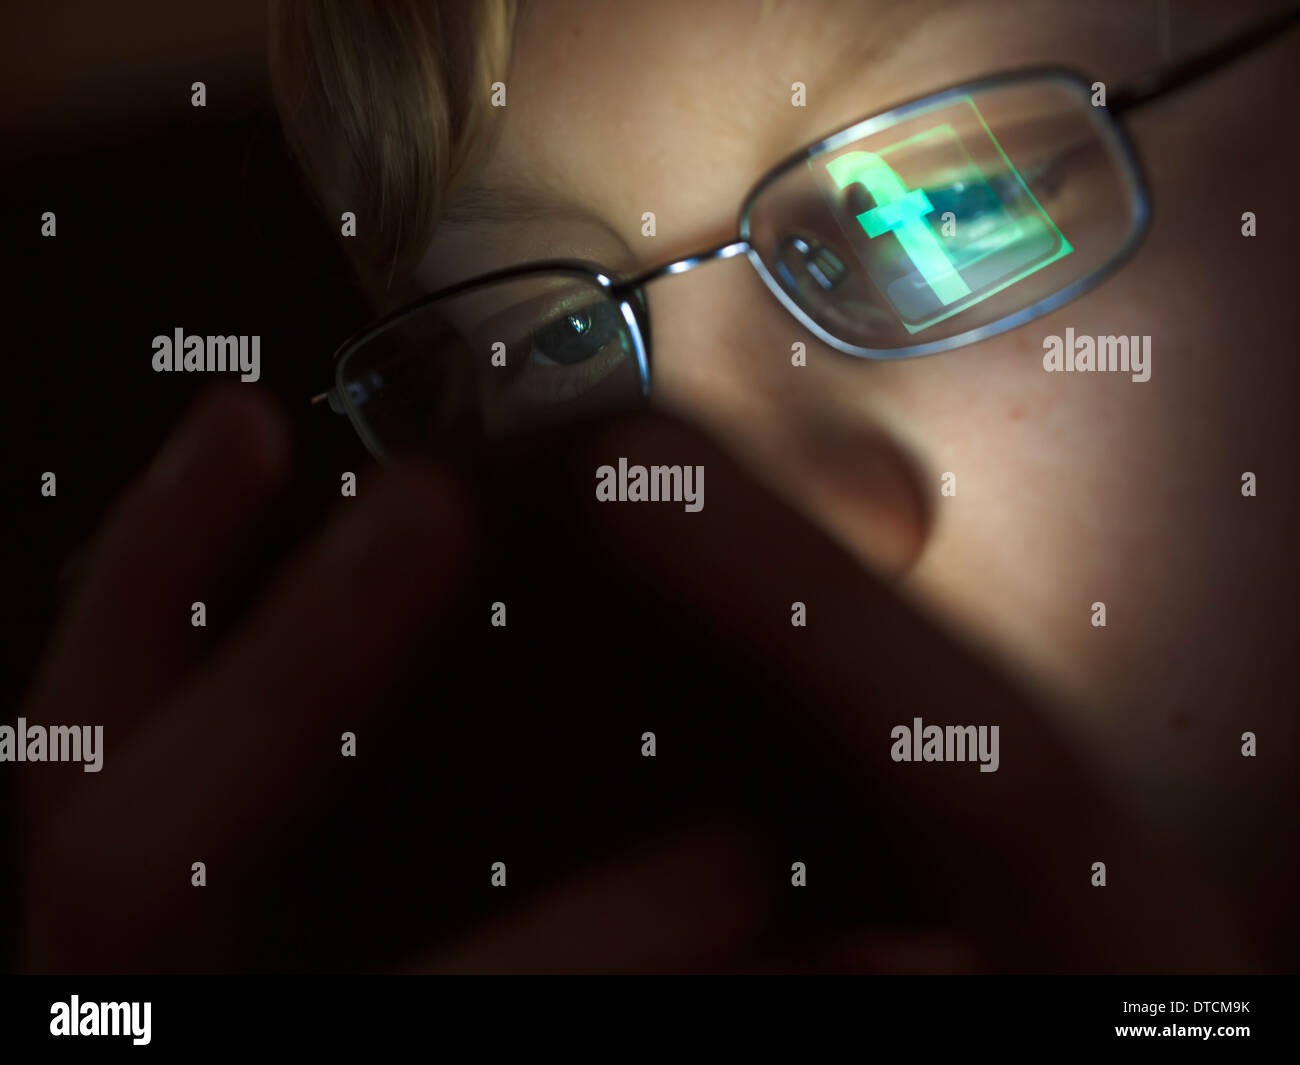 Un adolescente es navegar por Internet utilizando su iPhone, con el logotipo de Facebook se refleja en las gafas del muchacho. Foto de stock